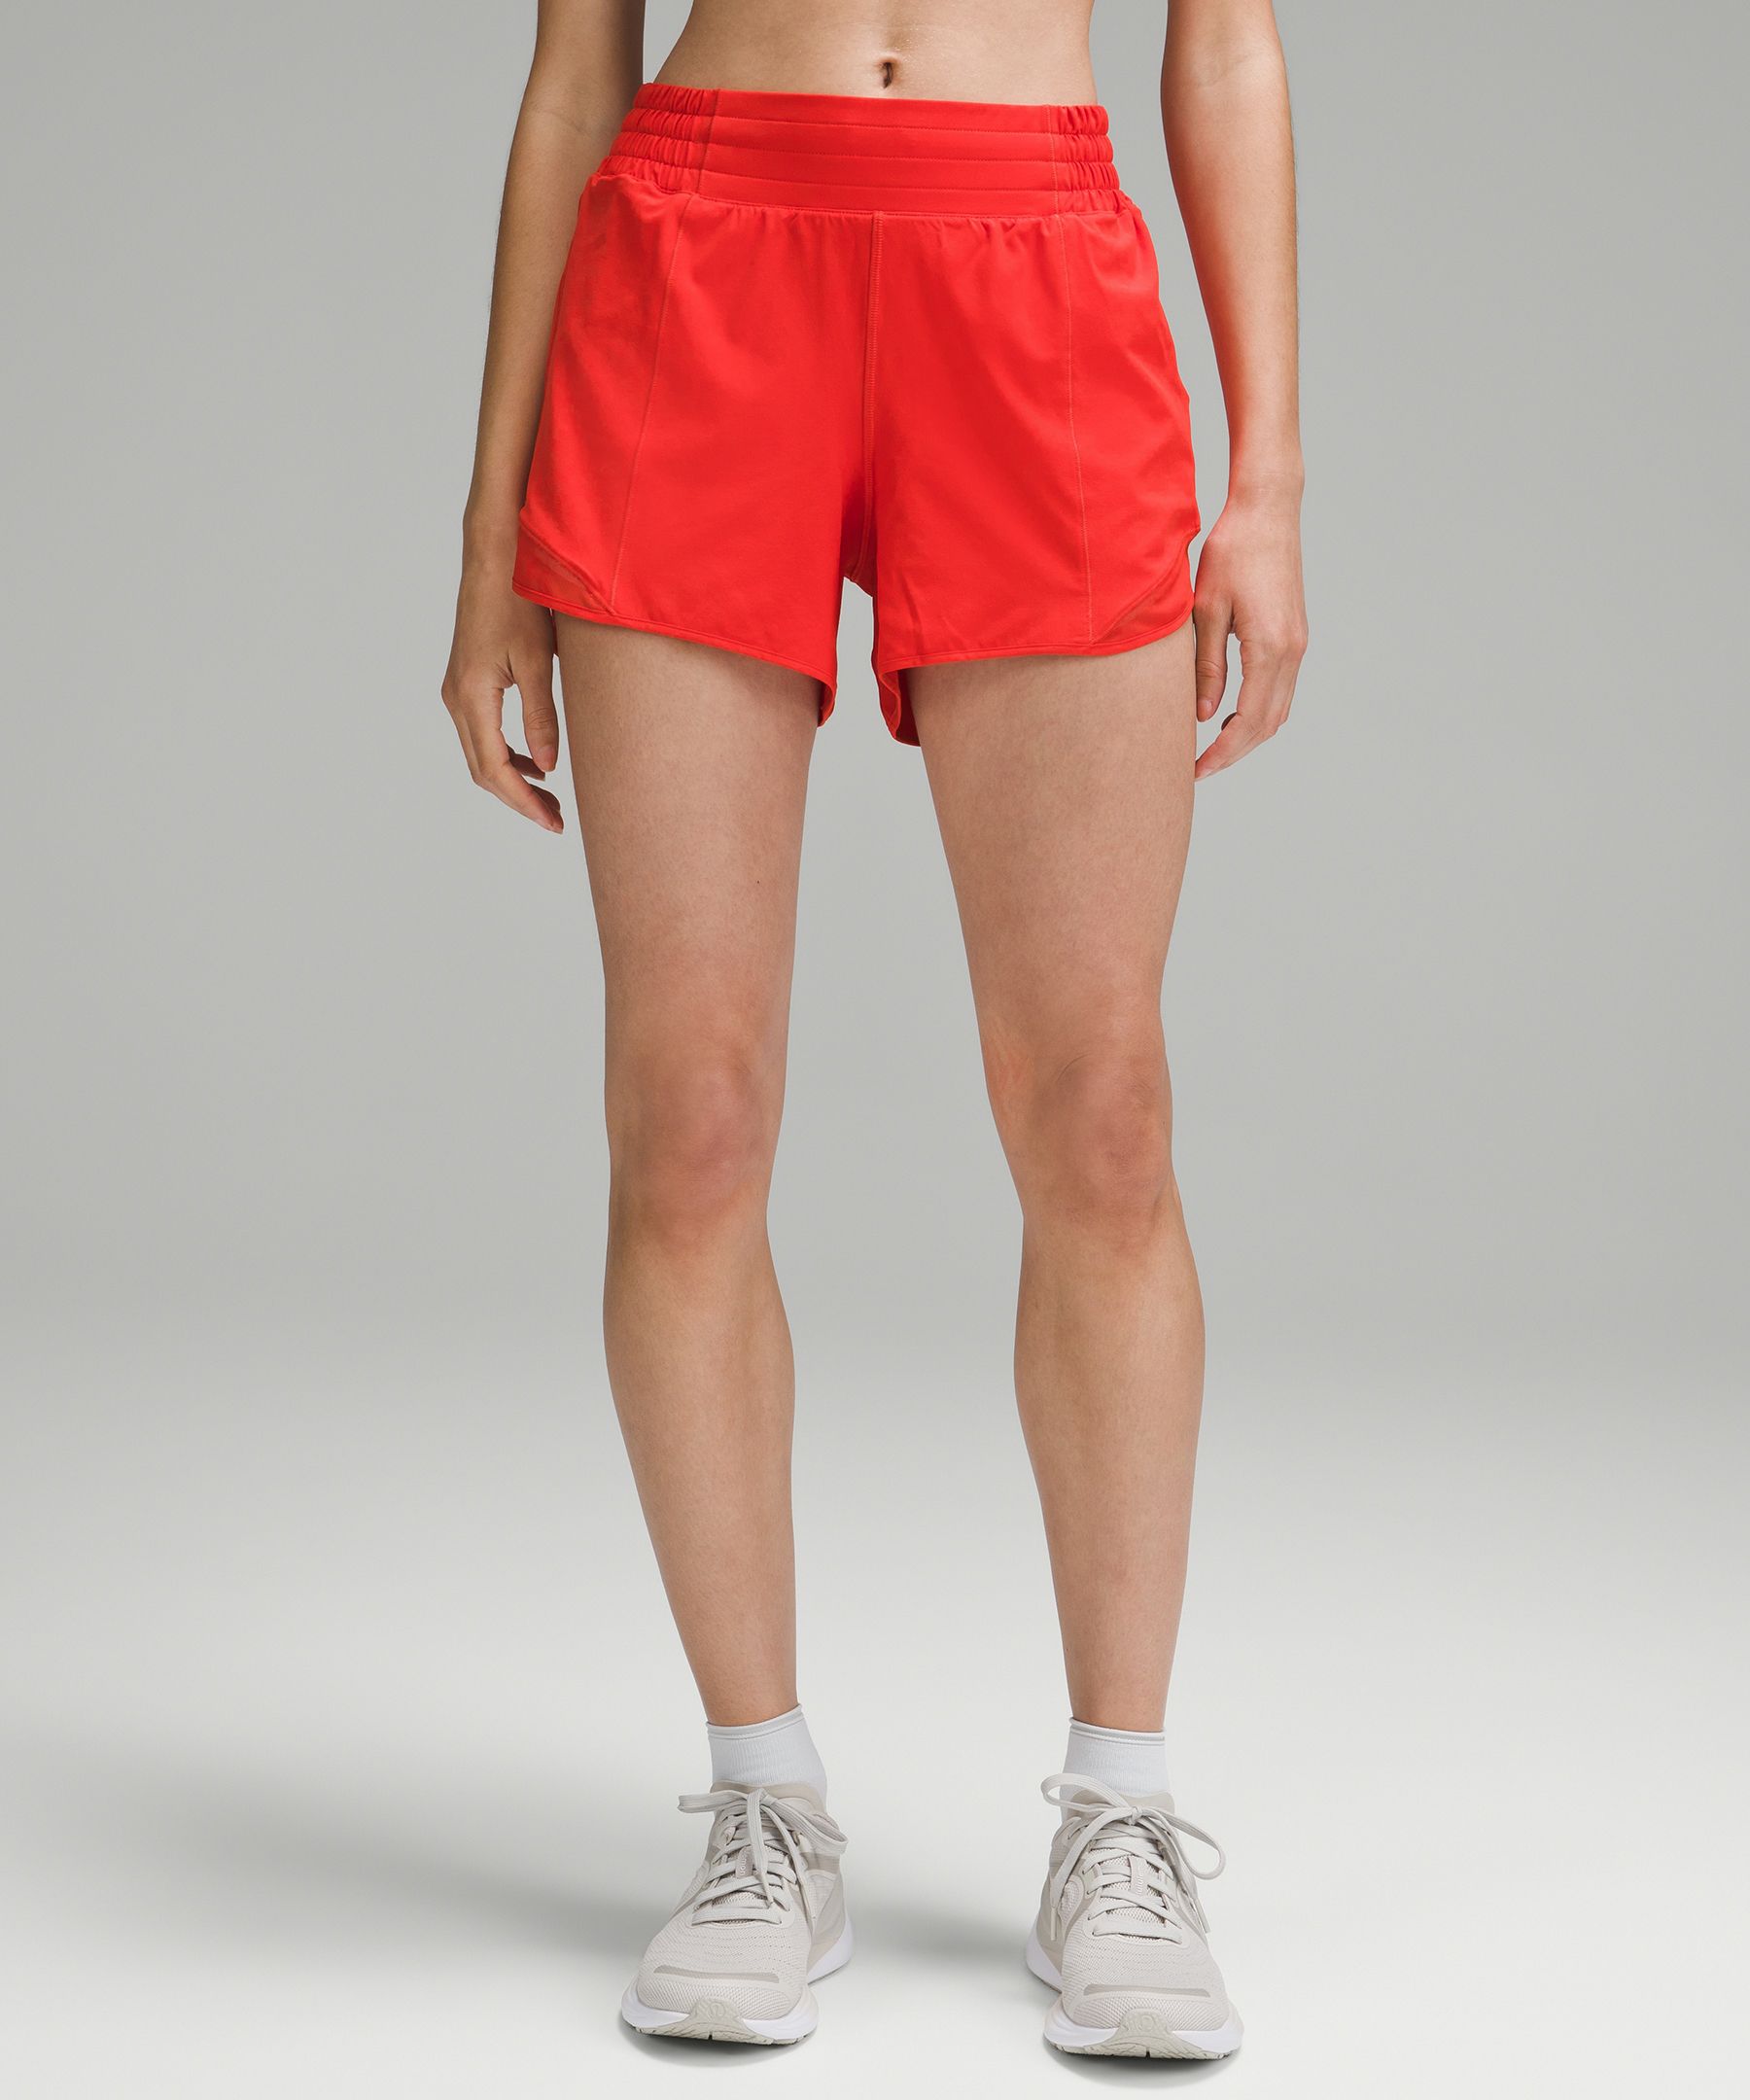 Shop Lululemon Hotty Hot High-rise Lined Shorts 4"